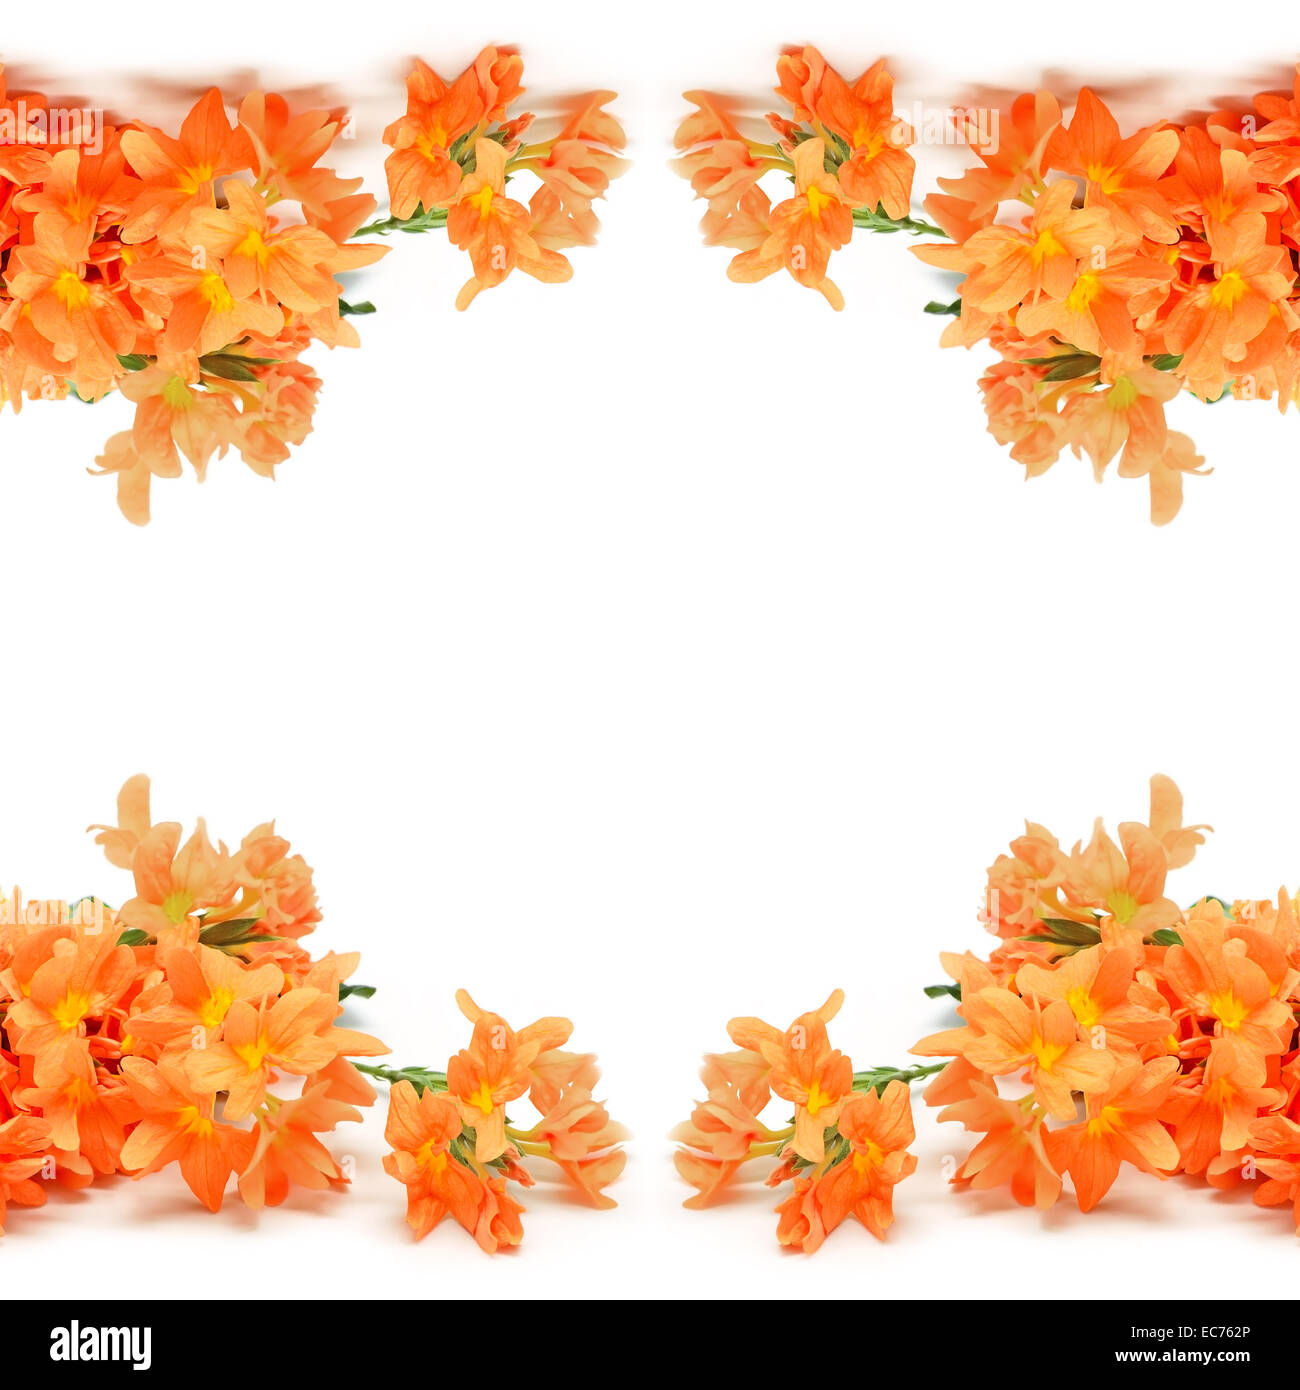 Fleur Orange pétard (Crossandras infundibuliformis), isolé sur fond blanc Banque D'Images